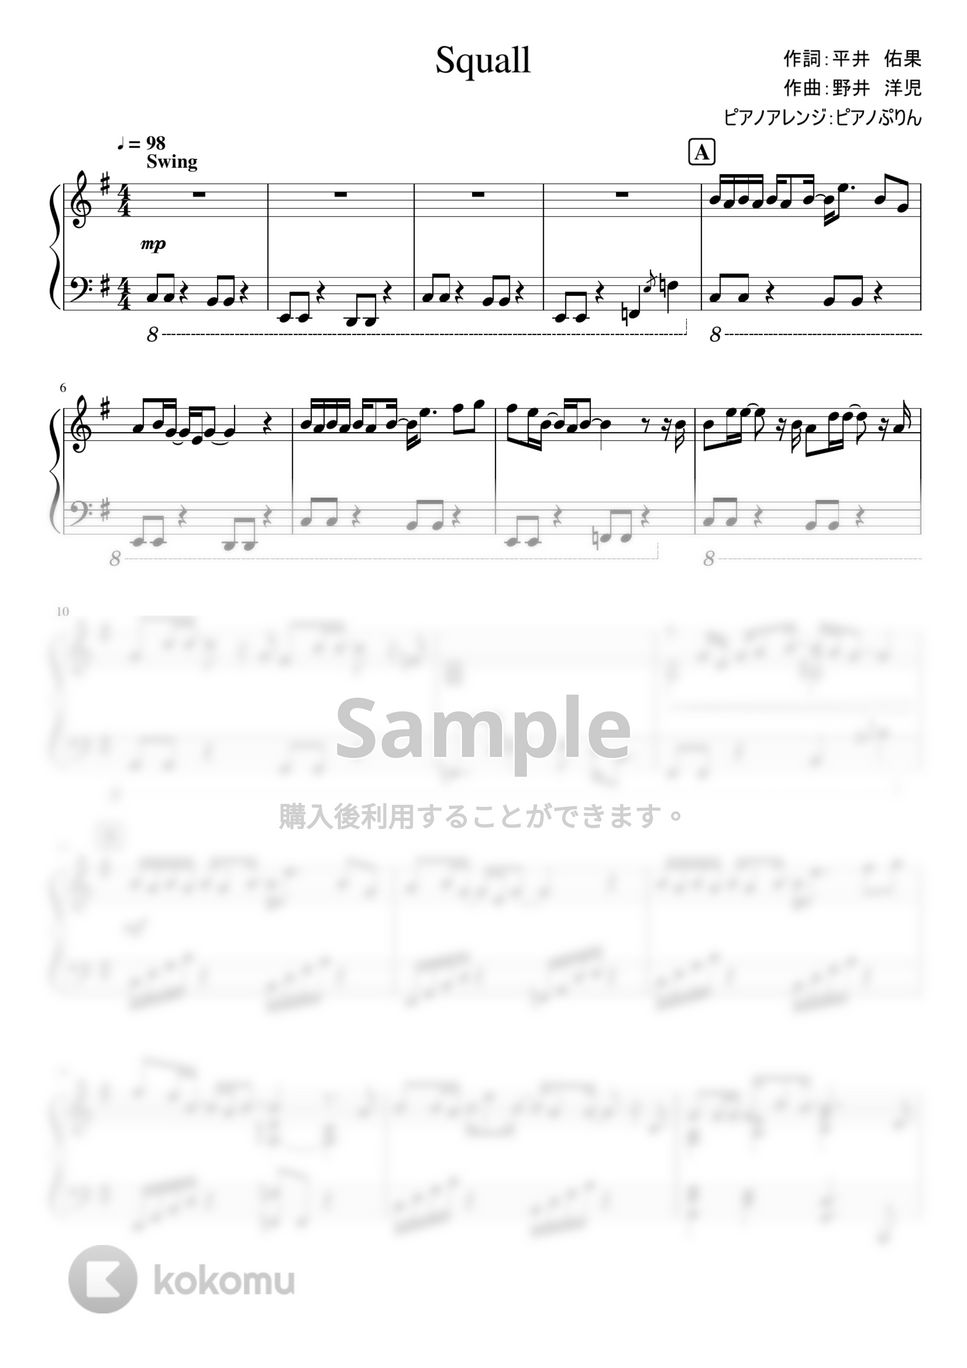 中山優馬 - Squall (Squall/ドラマ「高良くんと天城くん」エンディング主題歌) by ピアノぷりん